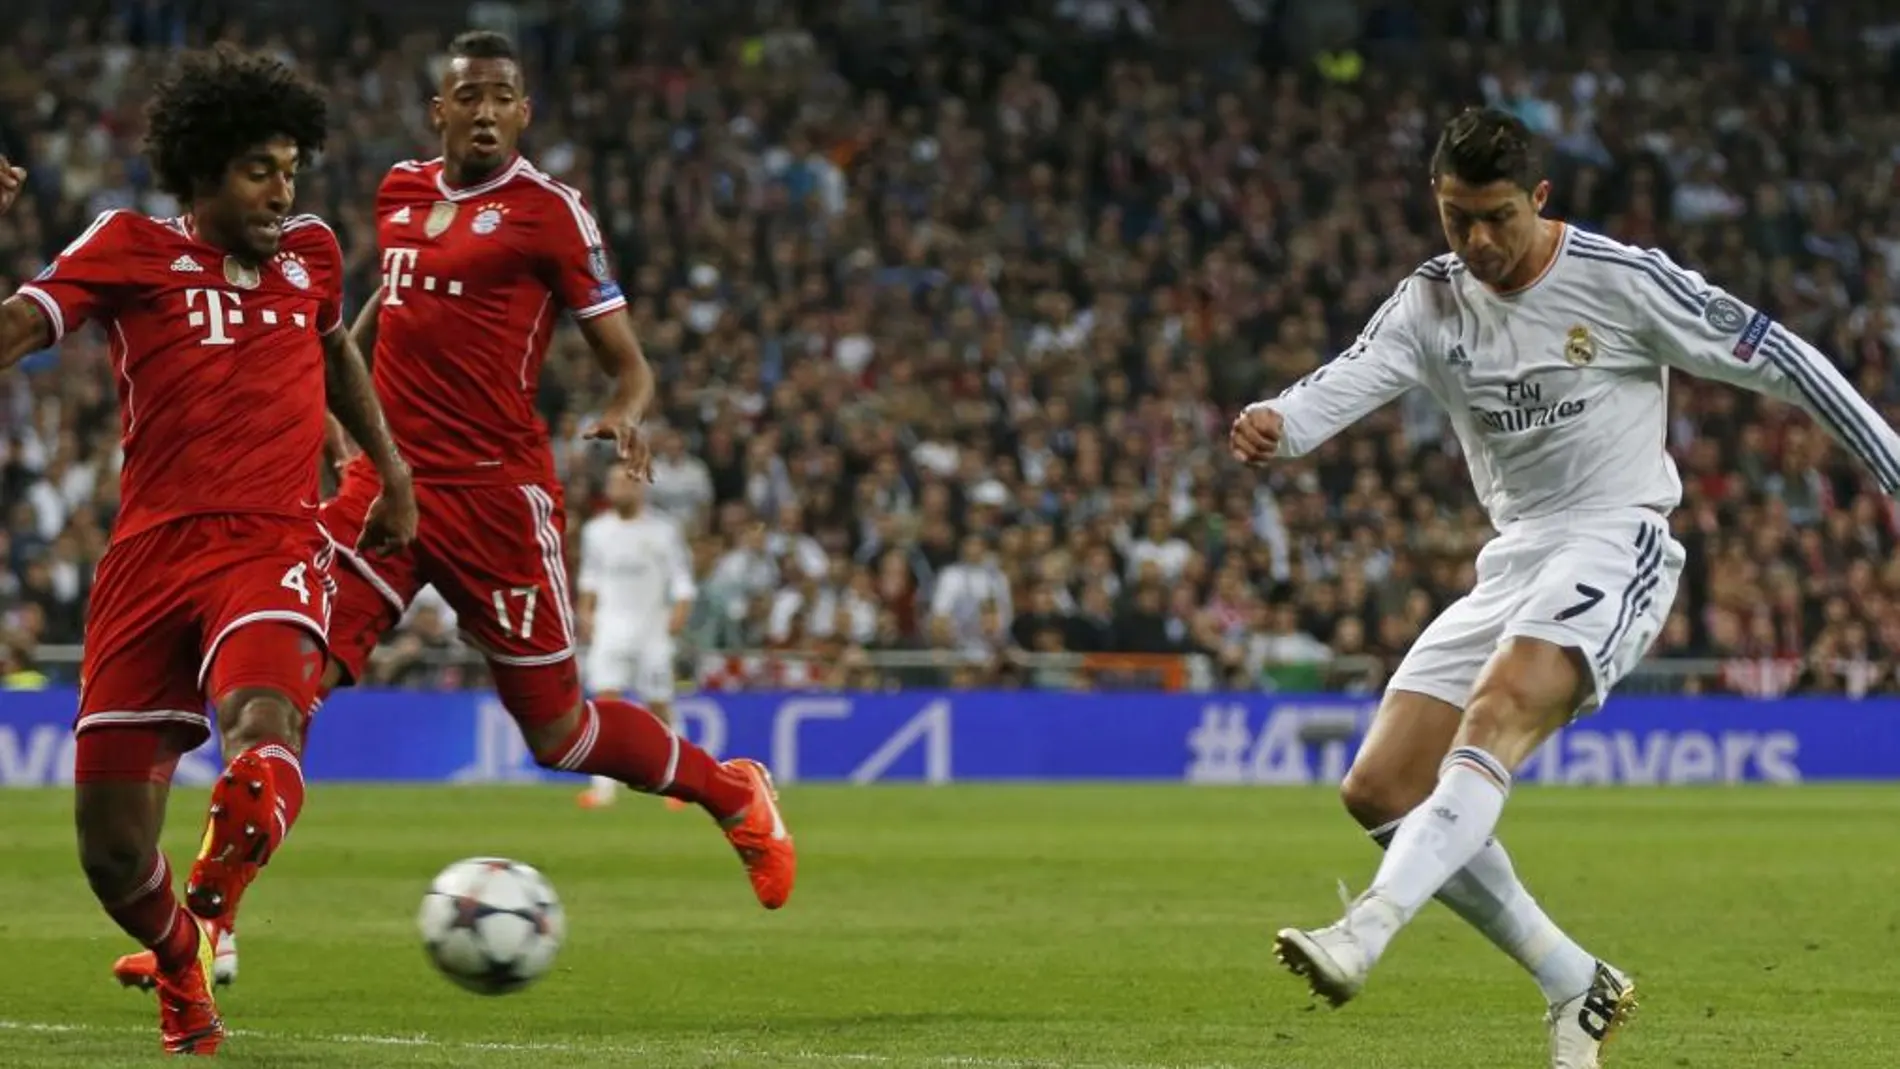 Cristiano Ronaldo dispara, balón que trata de interceptar el jugador del Bayern Dante